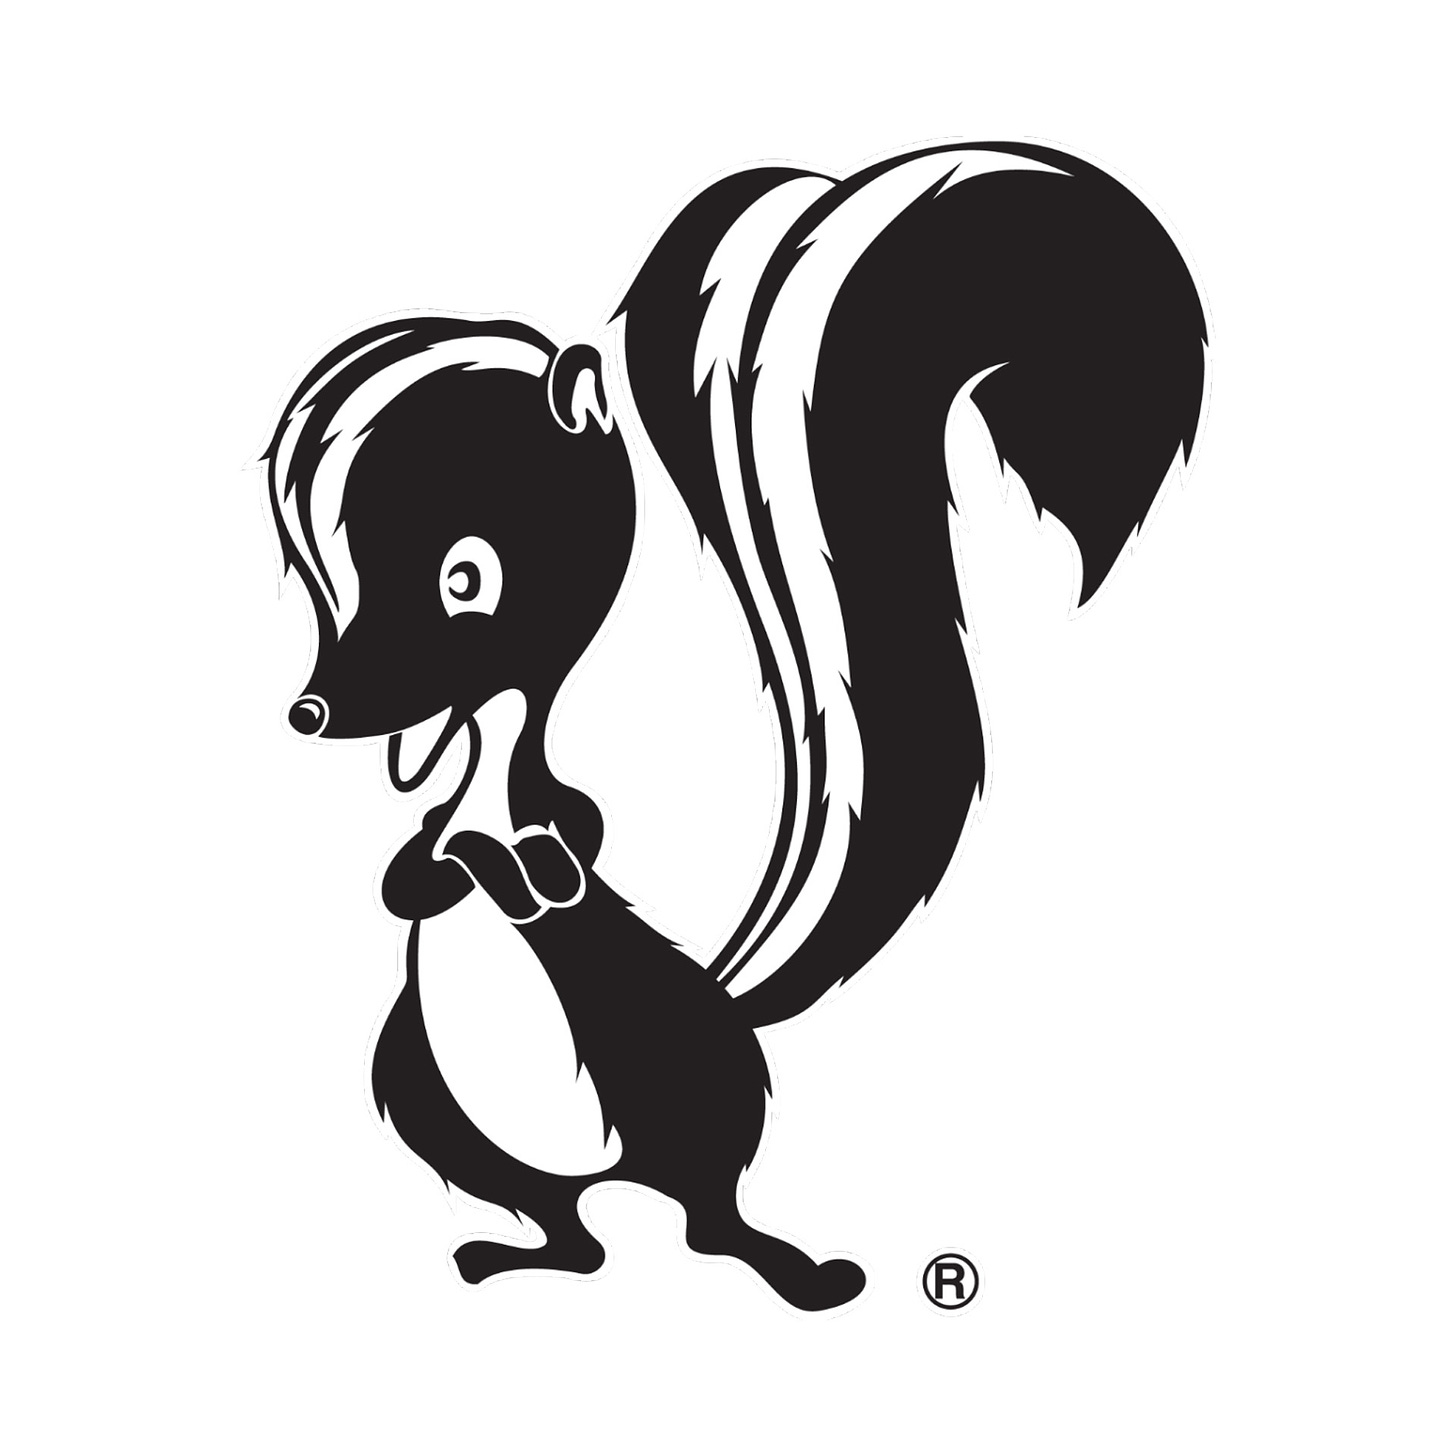 Skunk Works logo